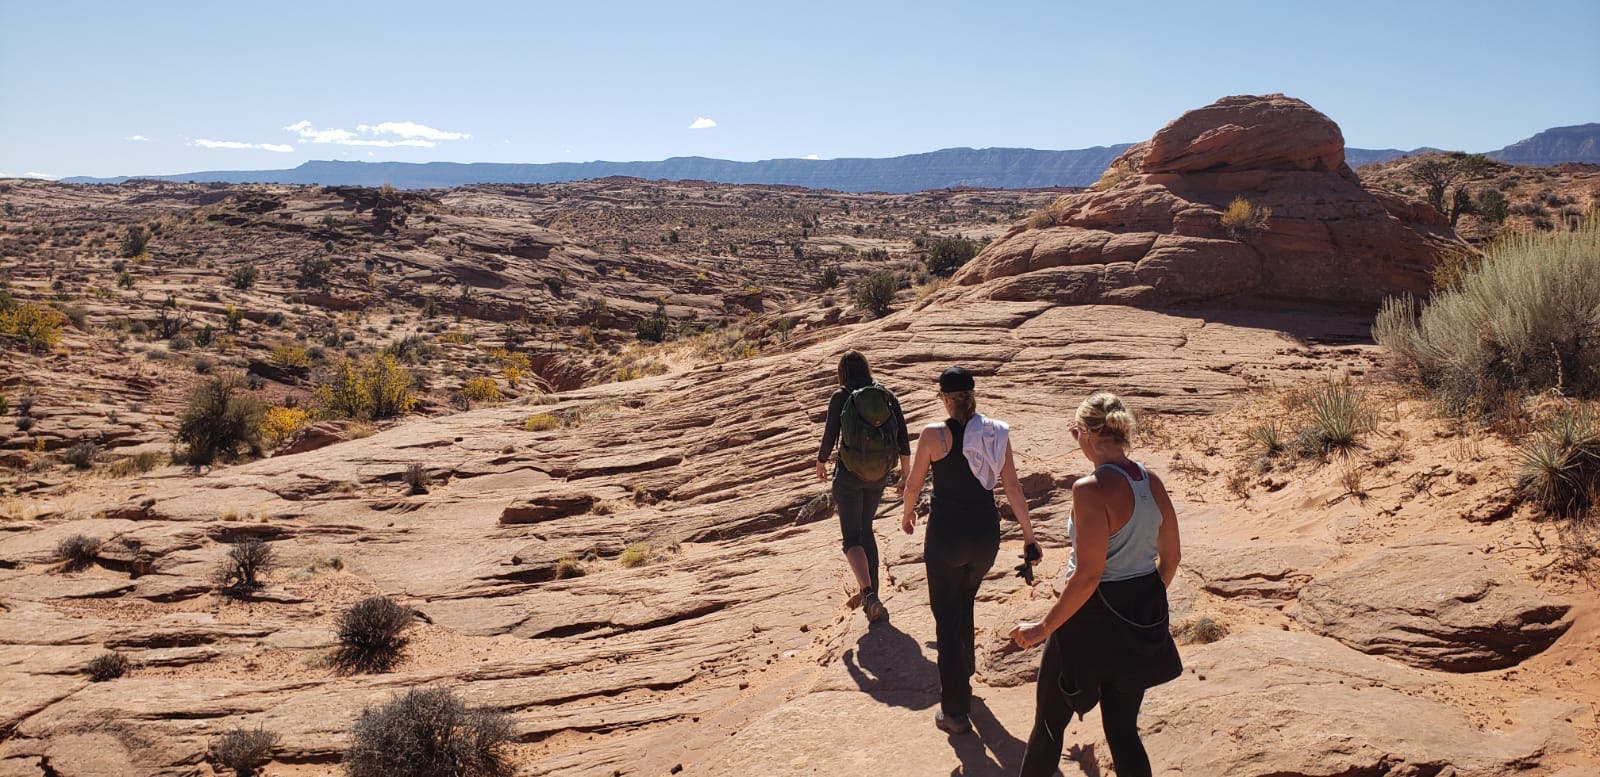 Three hikers trekking through the desert